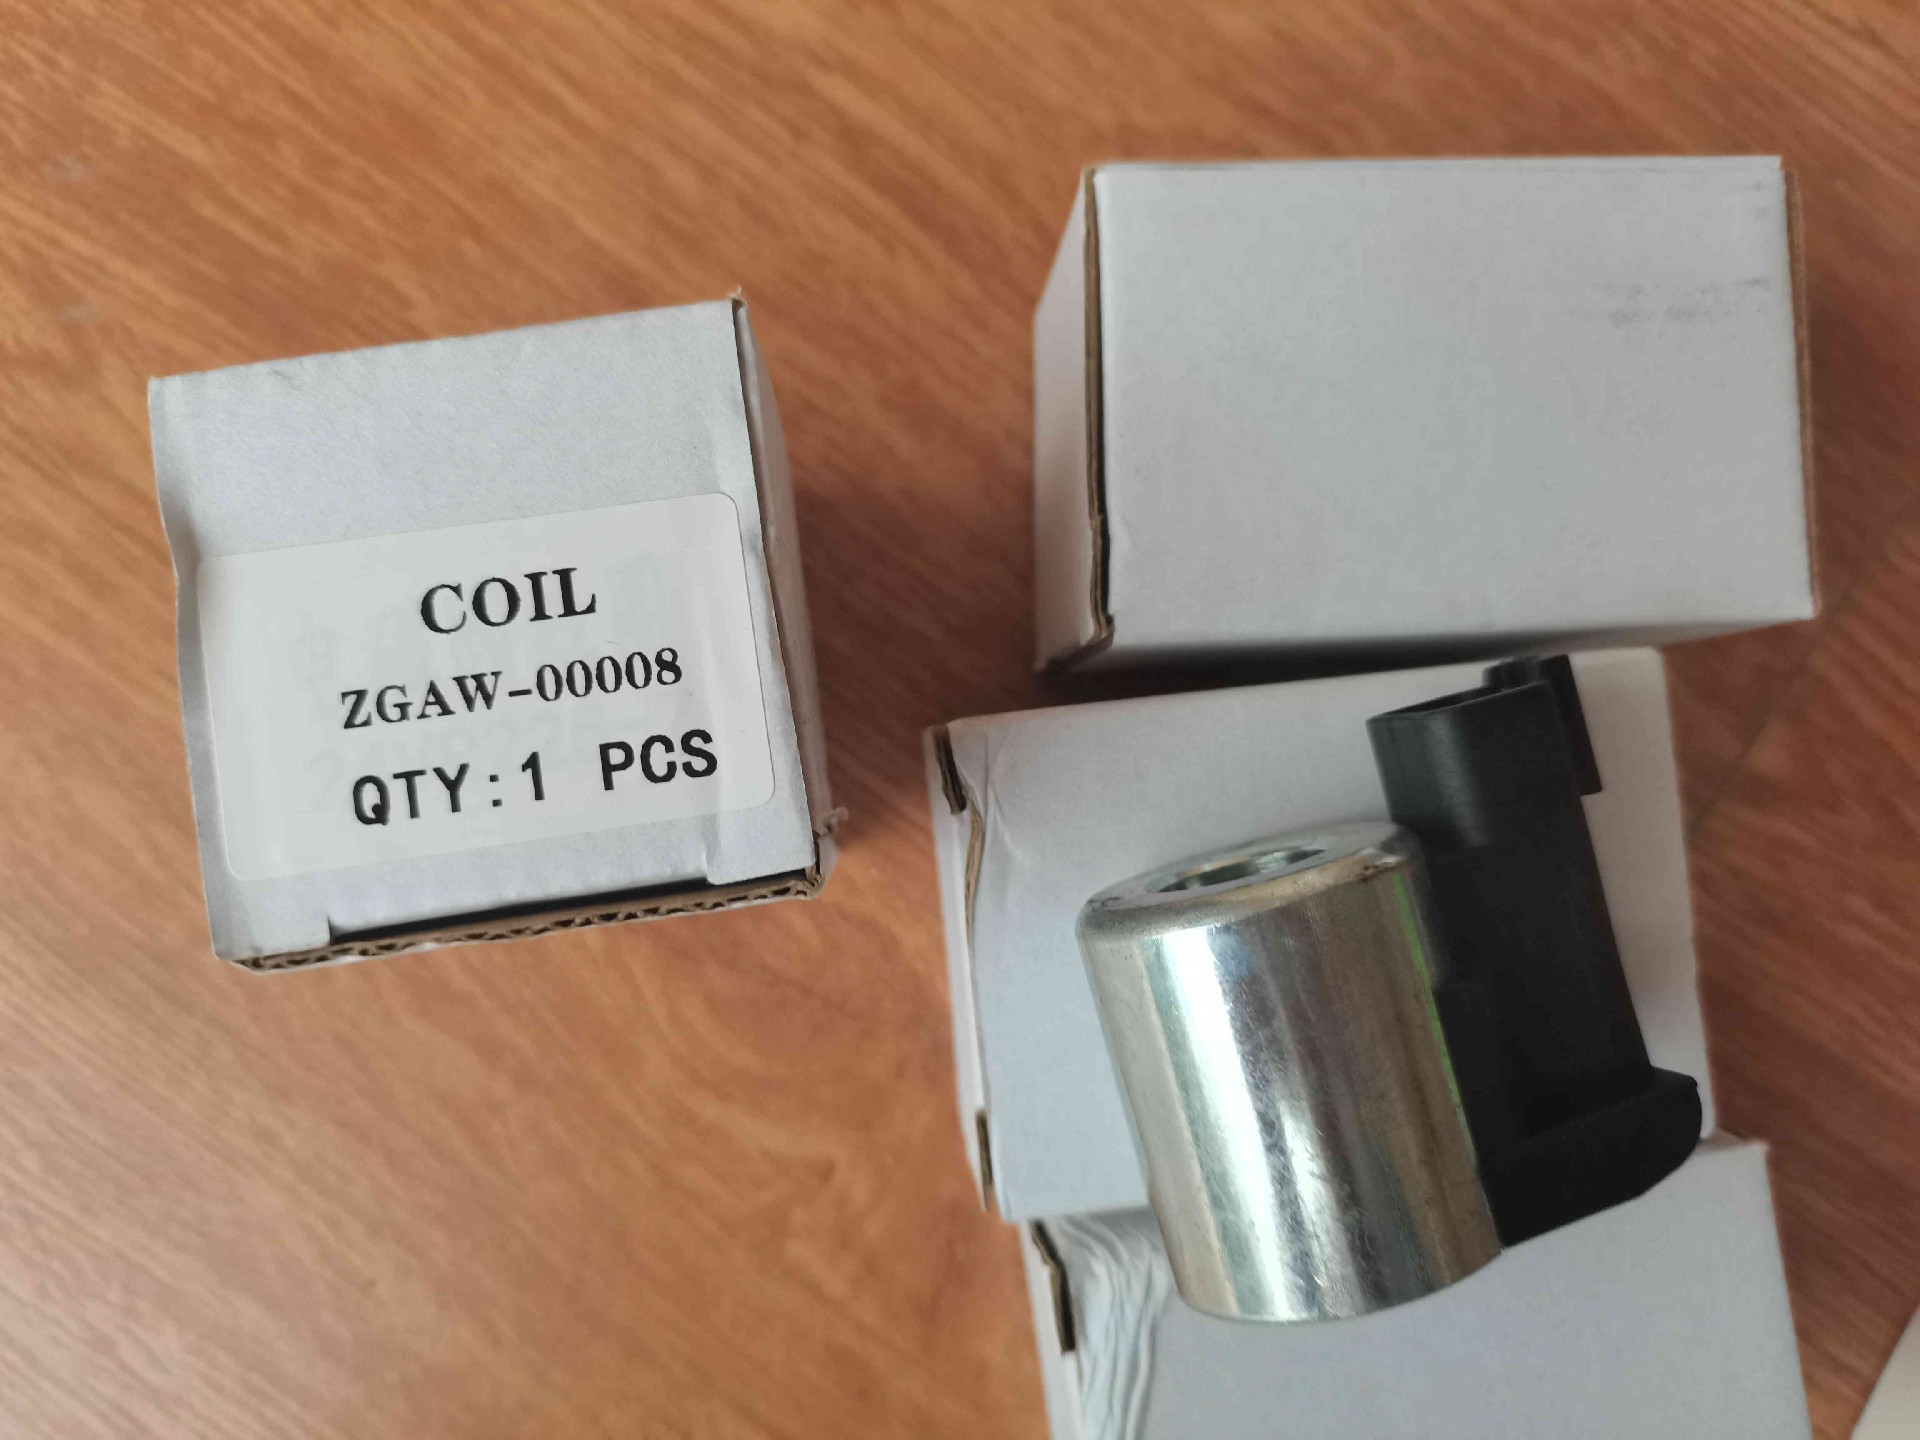 ZGAW-00008 Coil